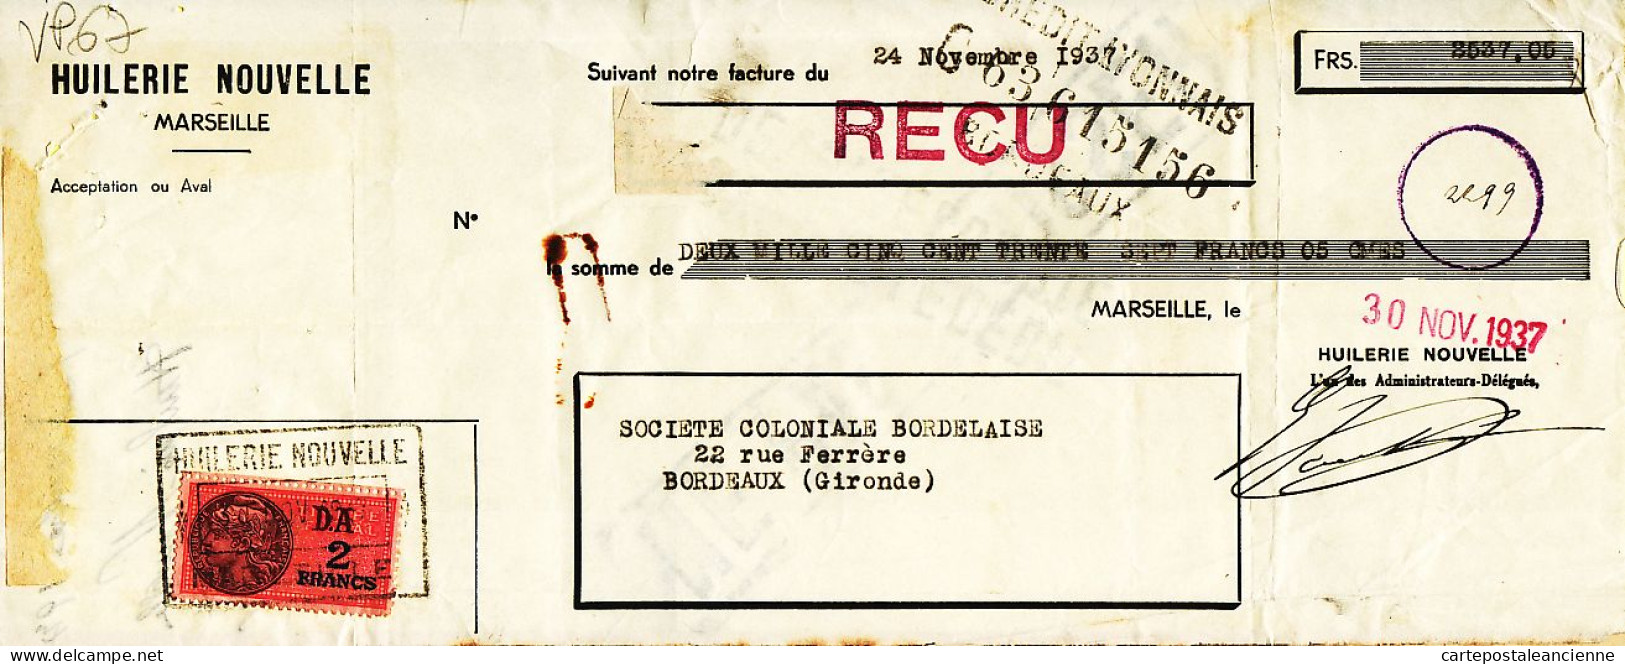 31276 / MARSEILLE Huilerie Nouvelle Lettre De Change 24.11.1937 à BESSE Coloniale Bordelaise Gironde Timbre Fiscal - Wissels